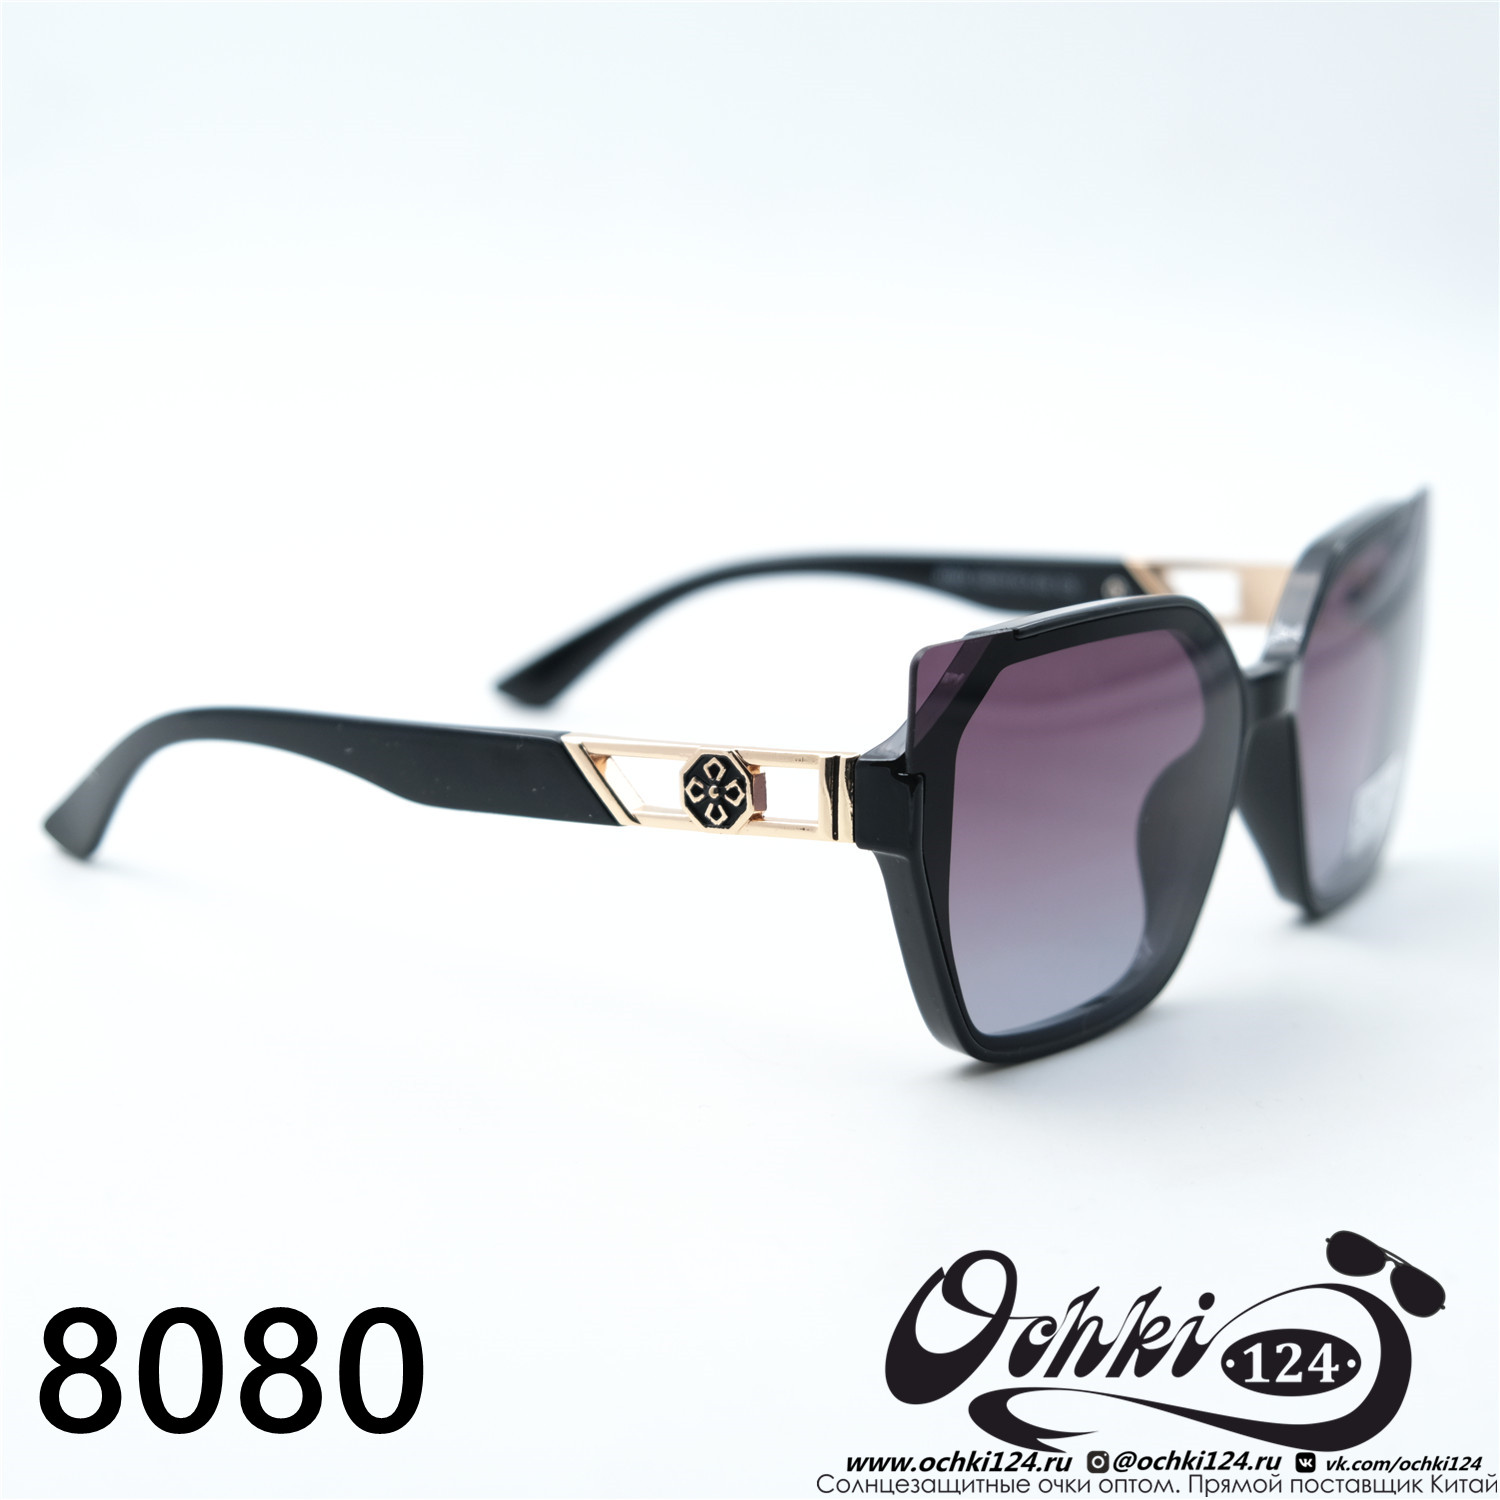  Солнцезащитные очки картинка 2023 Женские Геометрические формы Caipai 8080-C3 